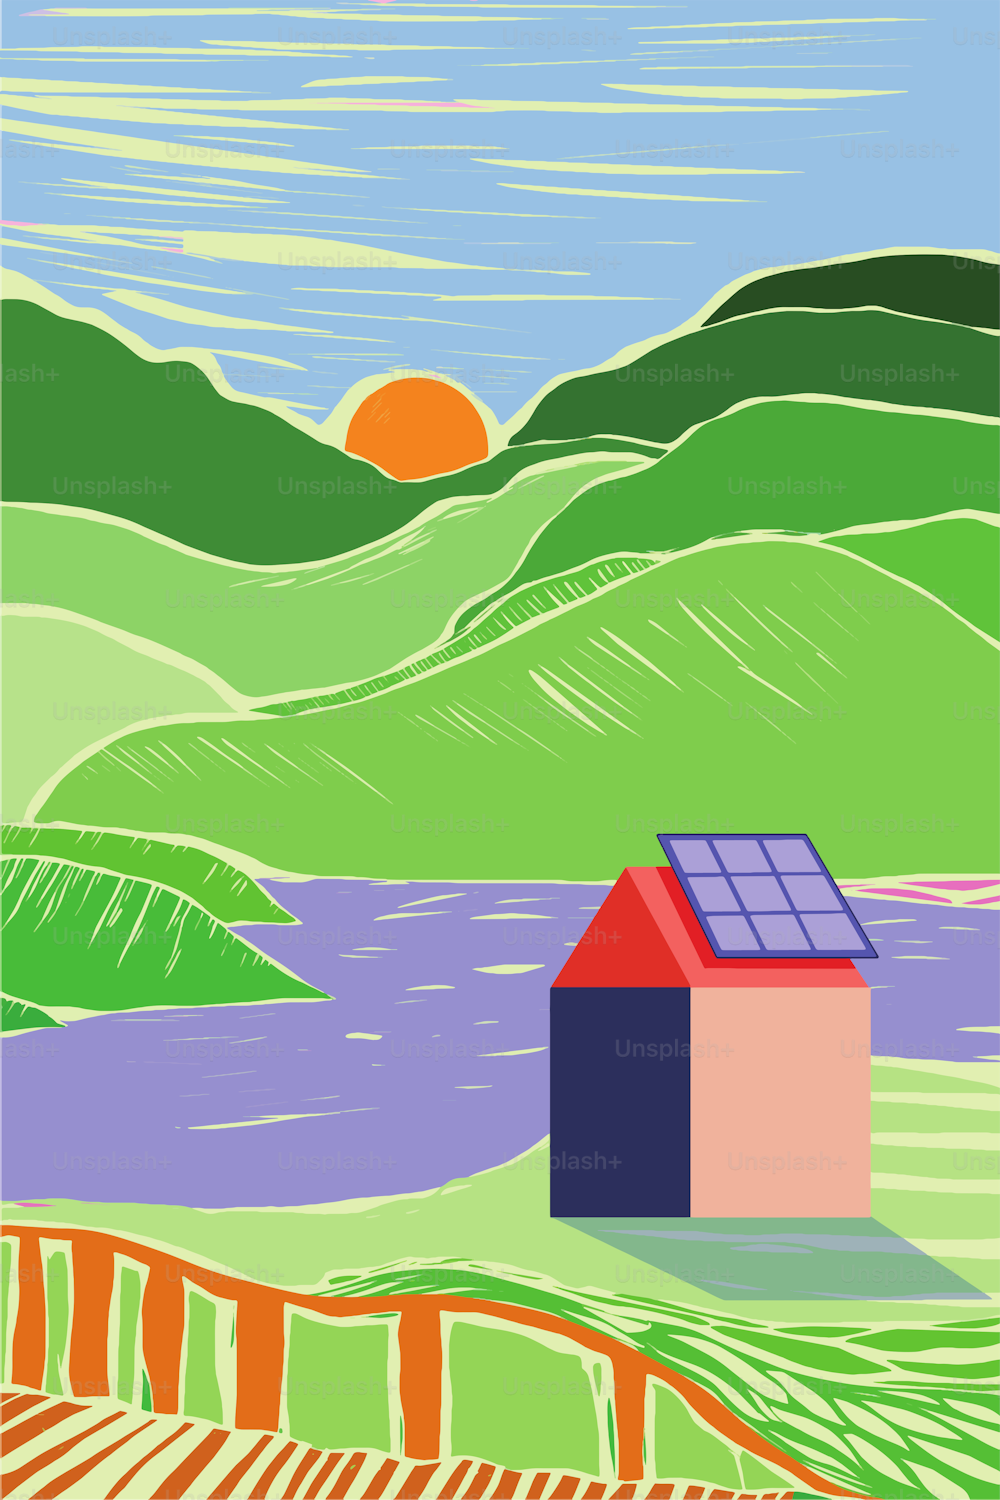 Un piccolo villaggio che diventa green e sostenibile installando pannelli solari sui tetti. Stile di incisione